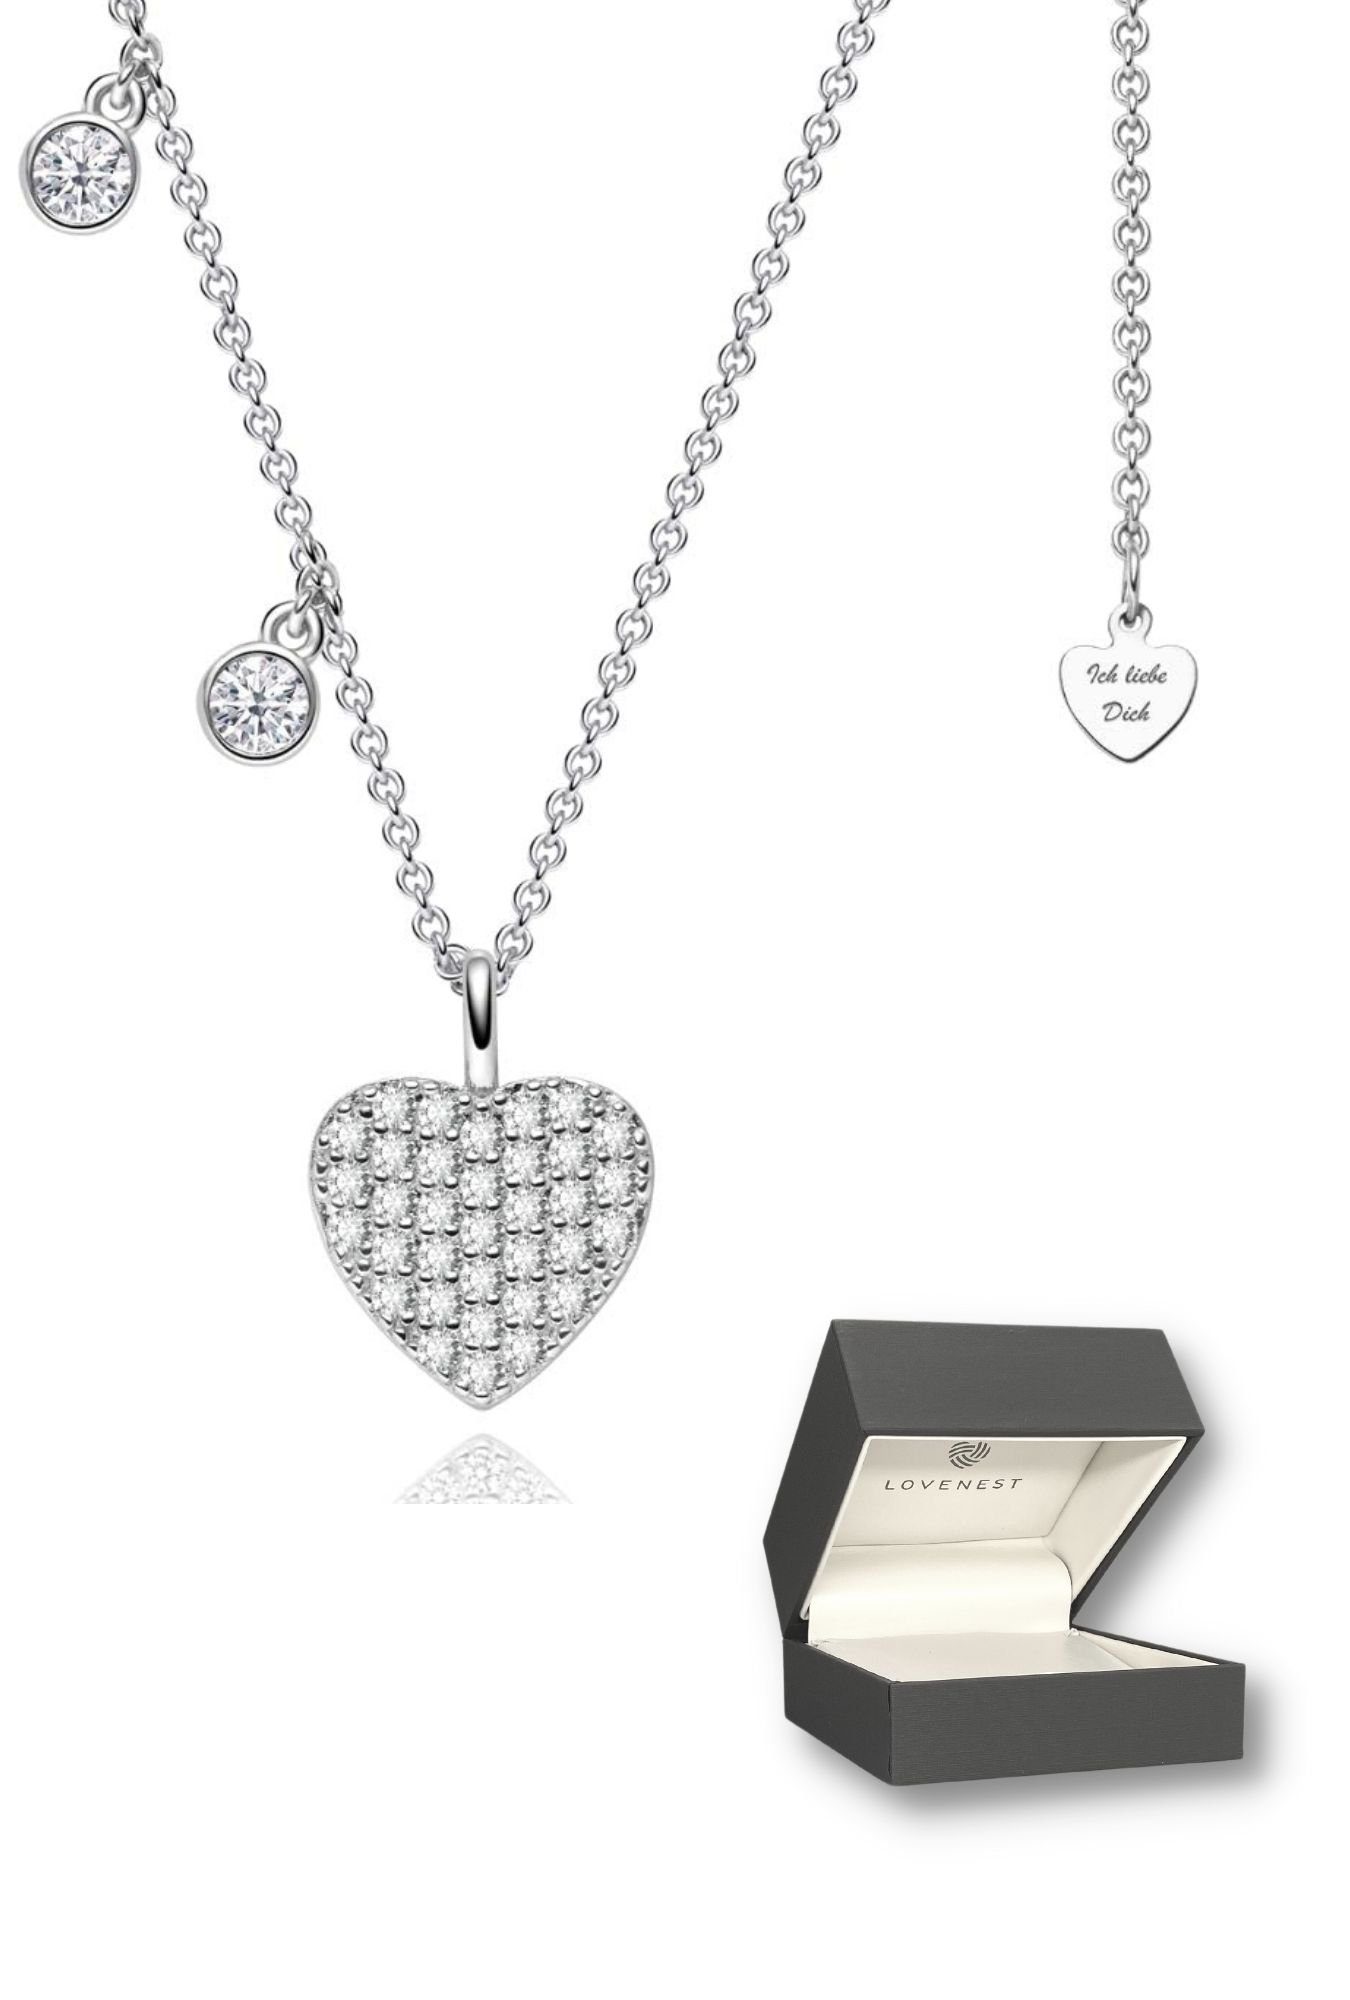 LOVENEST Herzkette Halskette Damen Silber 925, Herzkette mit kleinen  ZIRKONIA-Steinchen